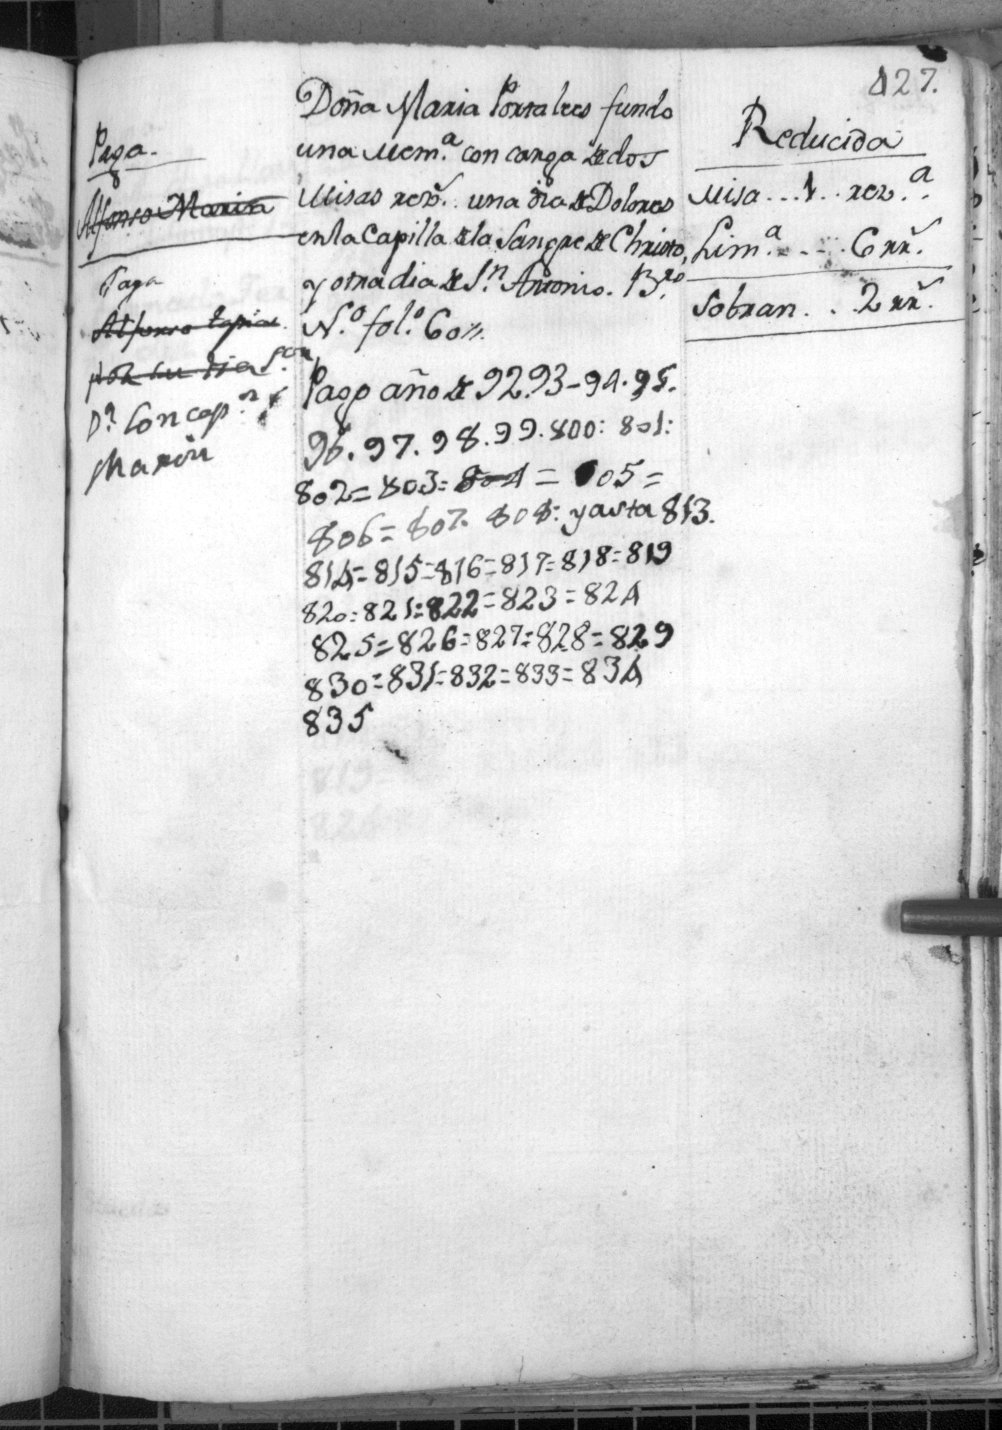 Cuentas de Memorias del Convento de San Francisco de Lorca. Años 1762-1835.